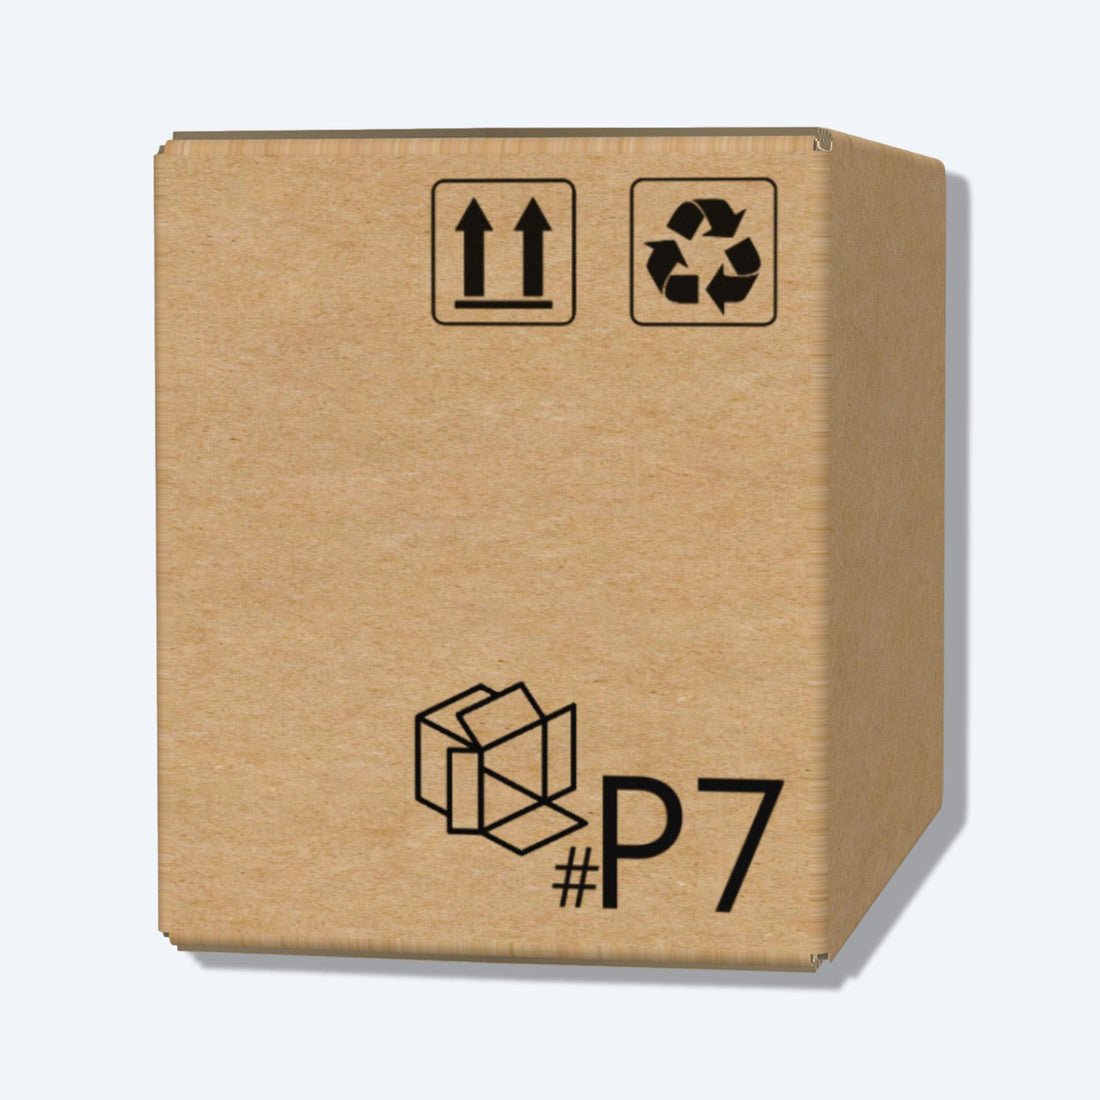 順豐速運P7尺寸紙箱側視圖，展示尺寸和質感，是適合中型物品運輸的理想選擇。